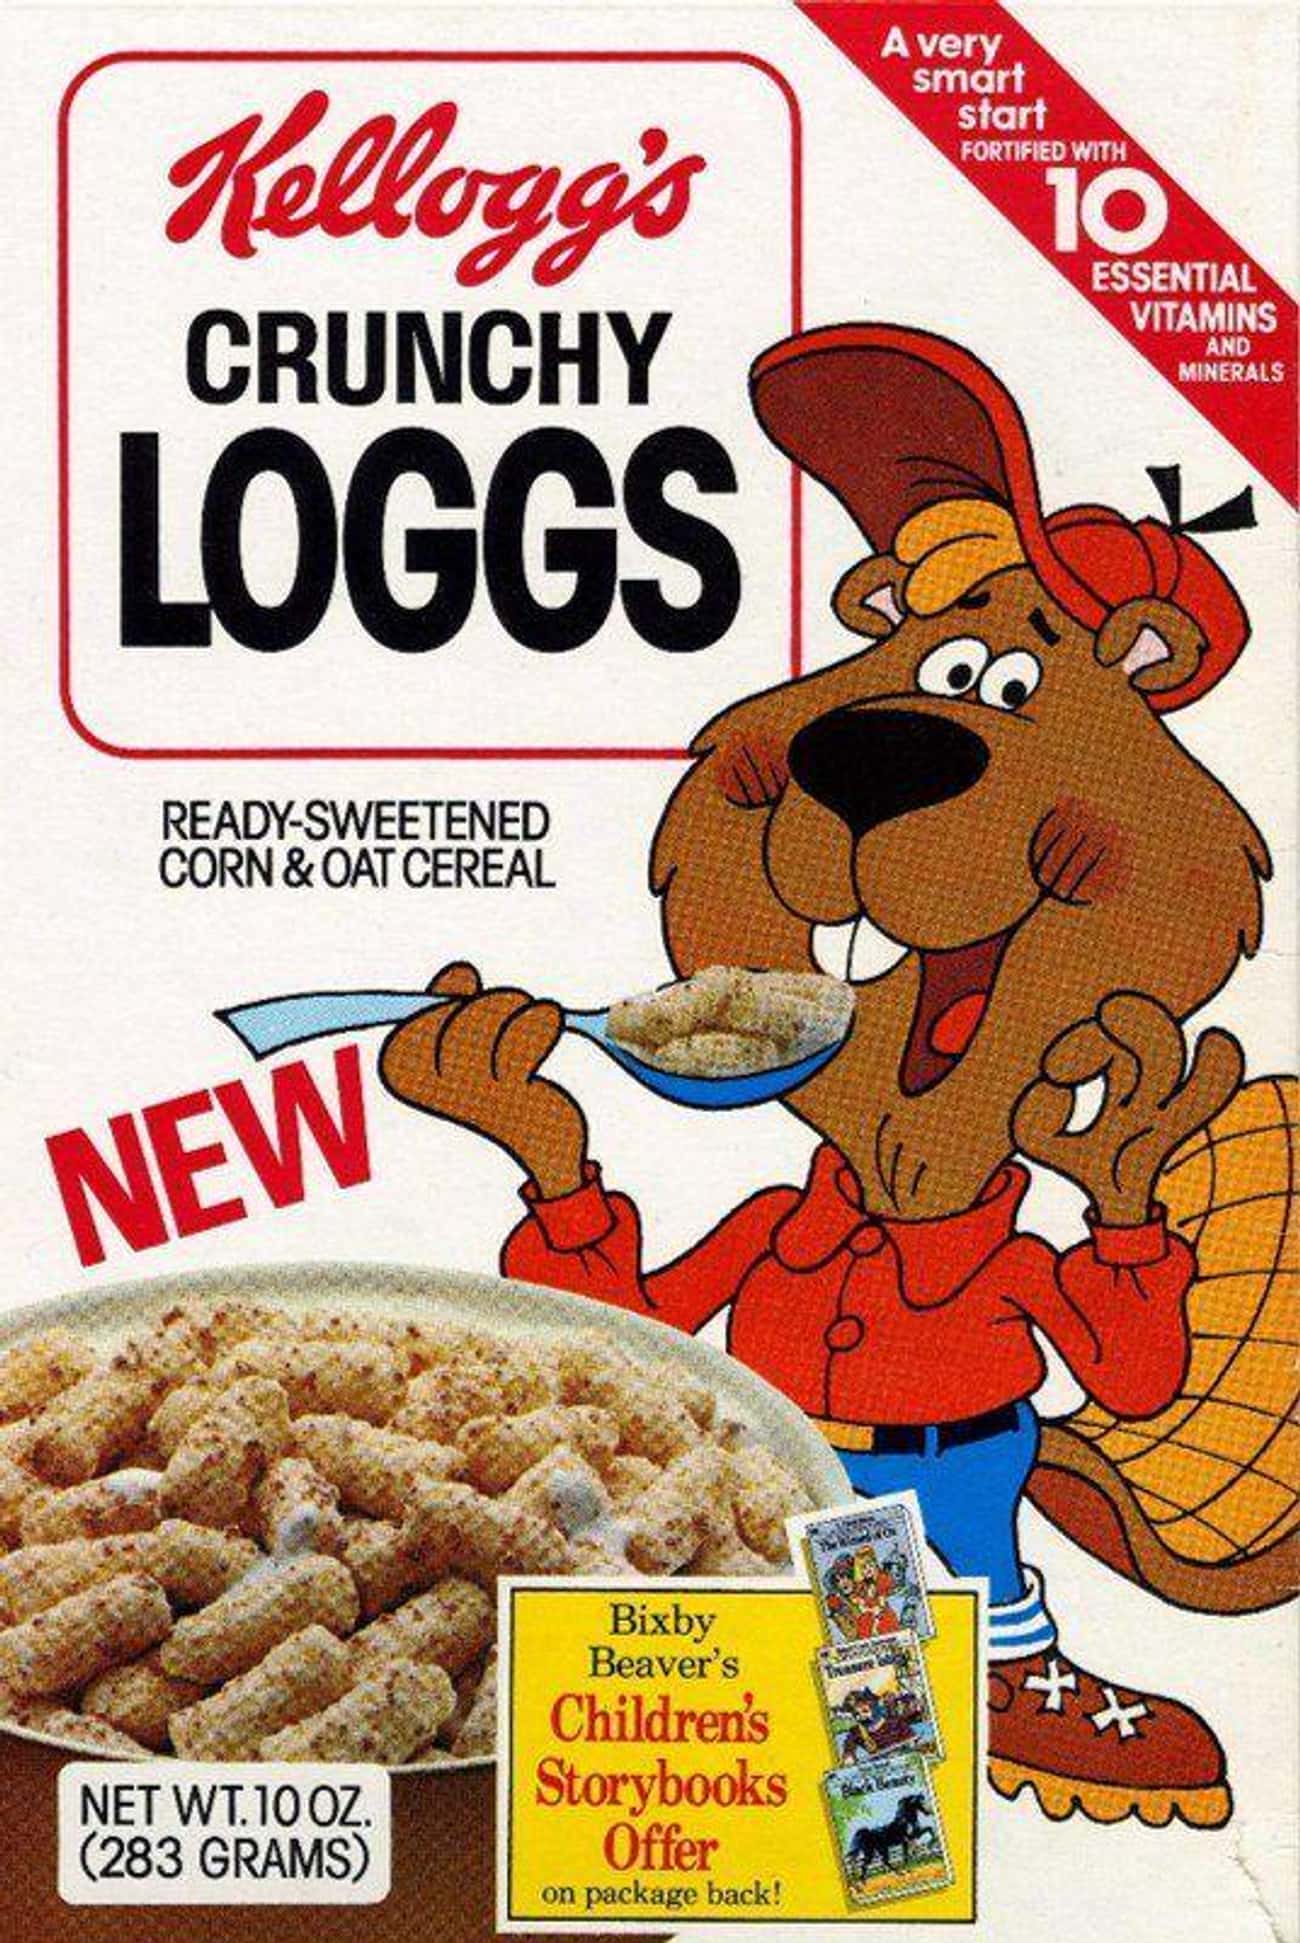 Crunchy Loggs